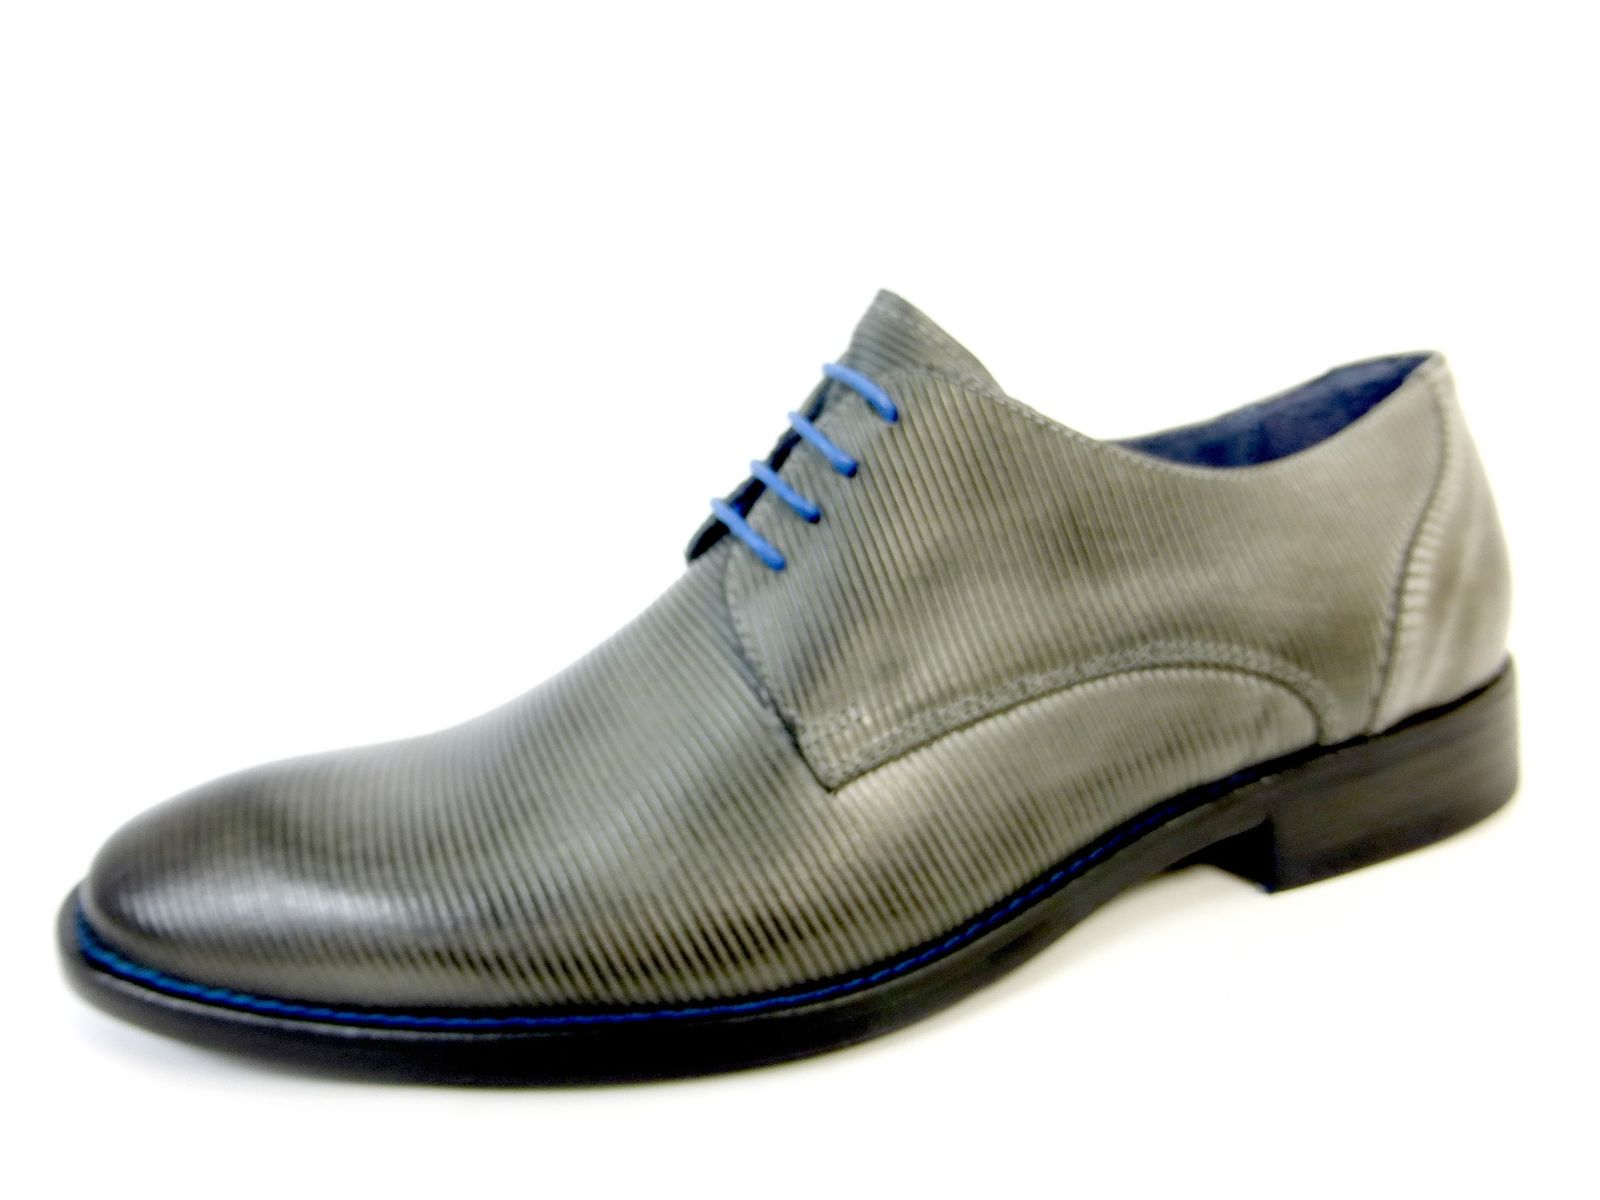 Schuh von Calzaturificio, 43